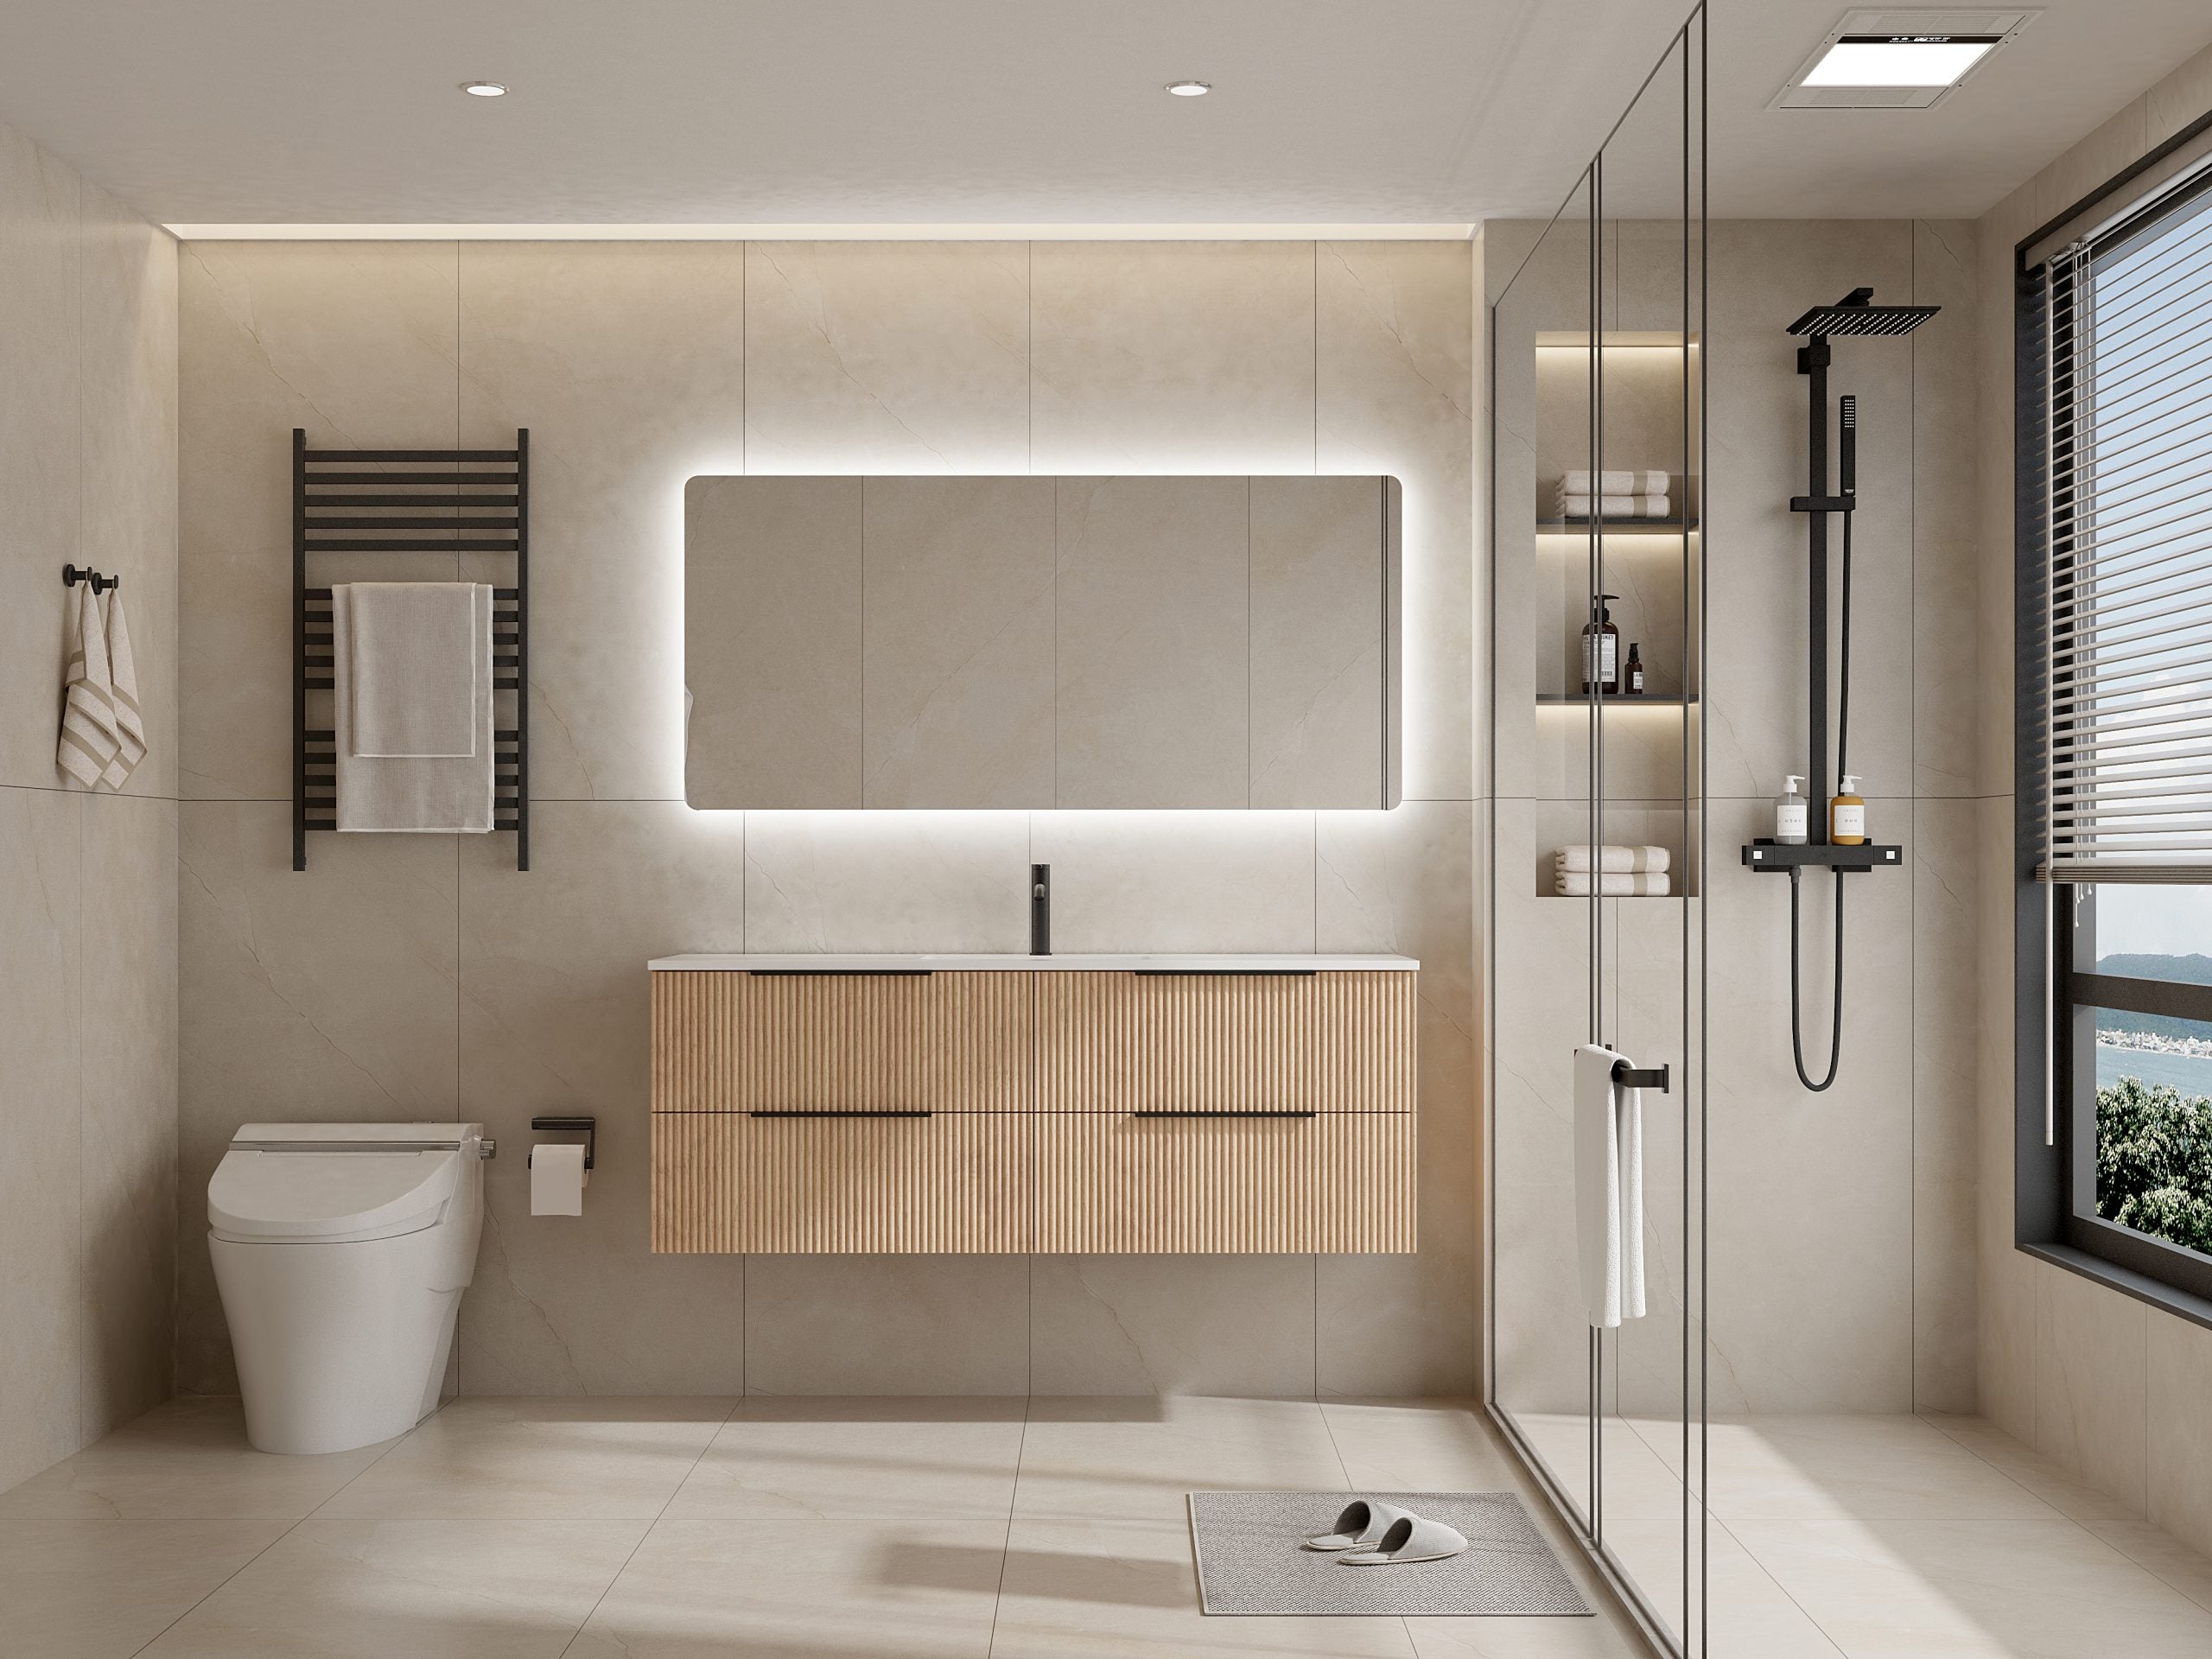 Ashwood 1500 Single Wall Hung Timber Bathroom Vanity